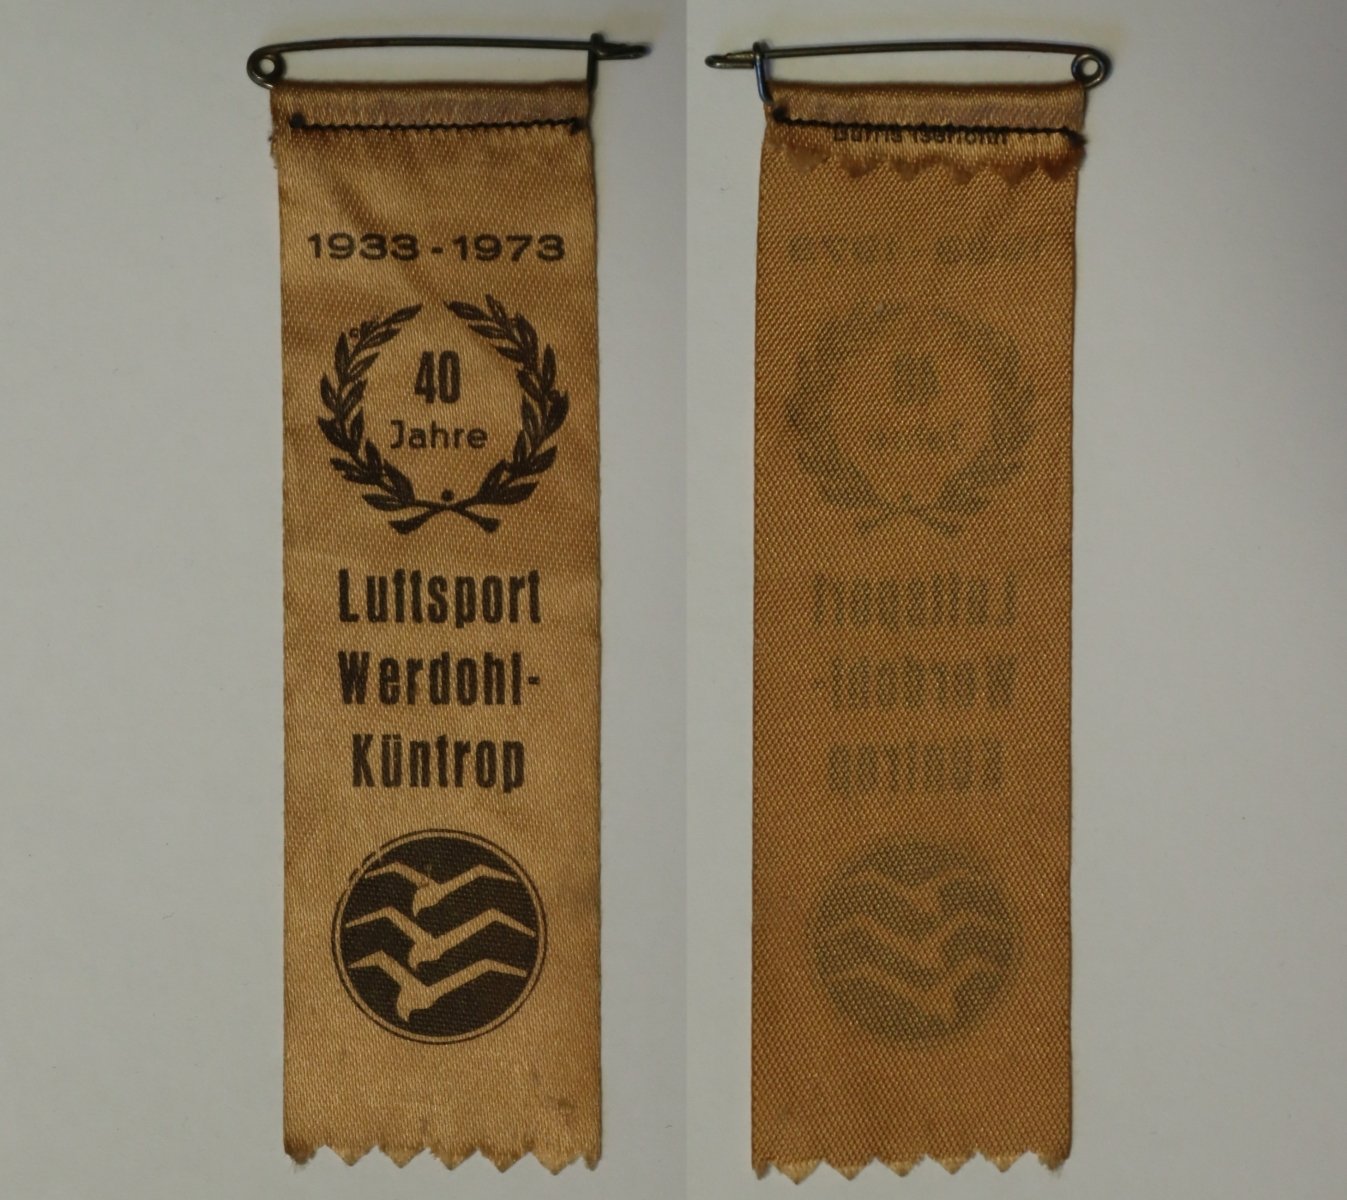 Abzeichen 40 Jahre Luftsportverein Werdohl-Küntrop (Sammlung Luftfahrt.Industrie.Westfalen | Moritz-Adolf Trappe CC BY-NC-SA)